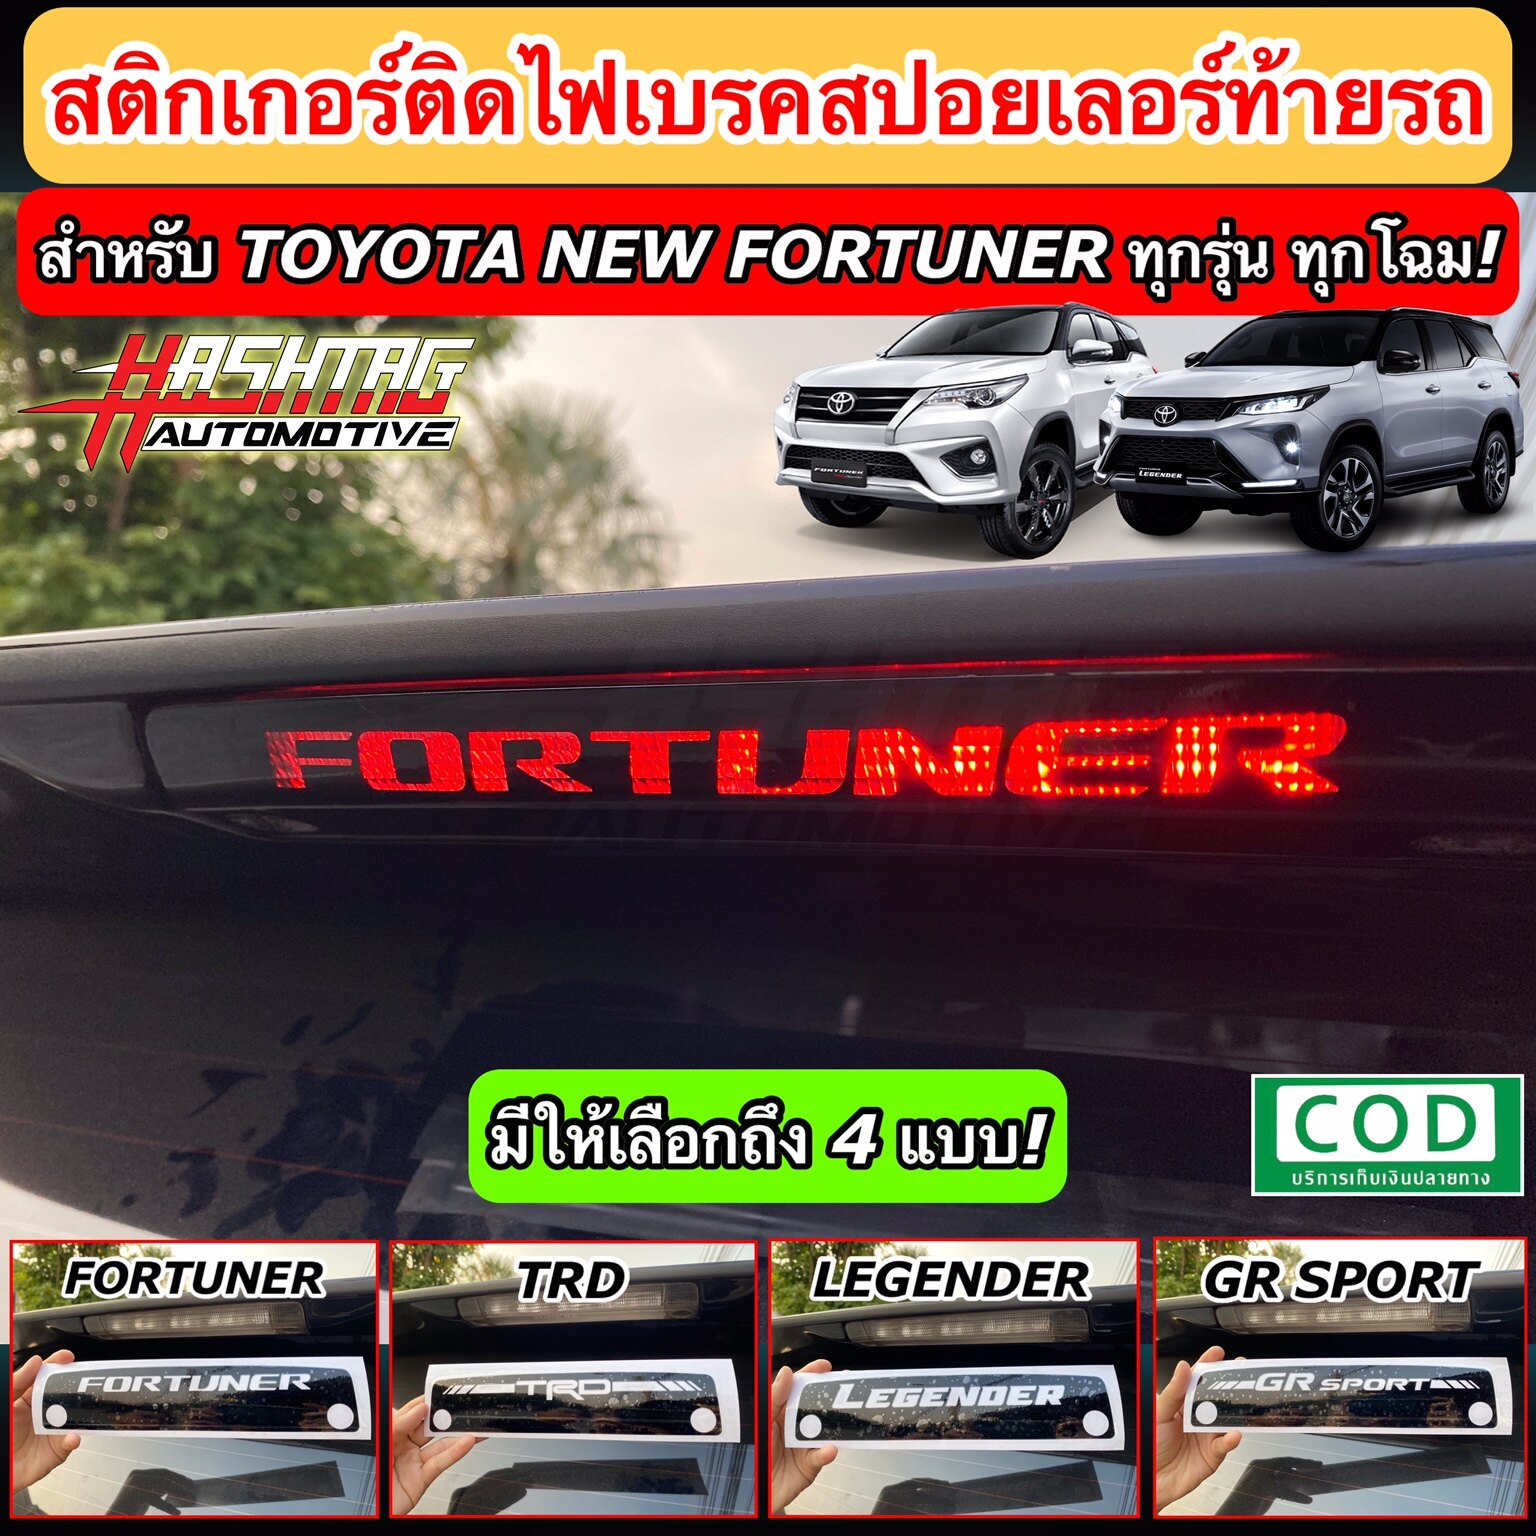 สติกเกอร์ติดไฟเบรคสปอยเลอร์ท้ายรถ สำหรับ Toyota New Fortuner ทุกรุ่น ทุกโฉม!! เพิ่มความโดดเด่นเวลากดเบรคเท่มากๆครับ [Brake light Sticker For Rear Spoiler]